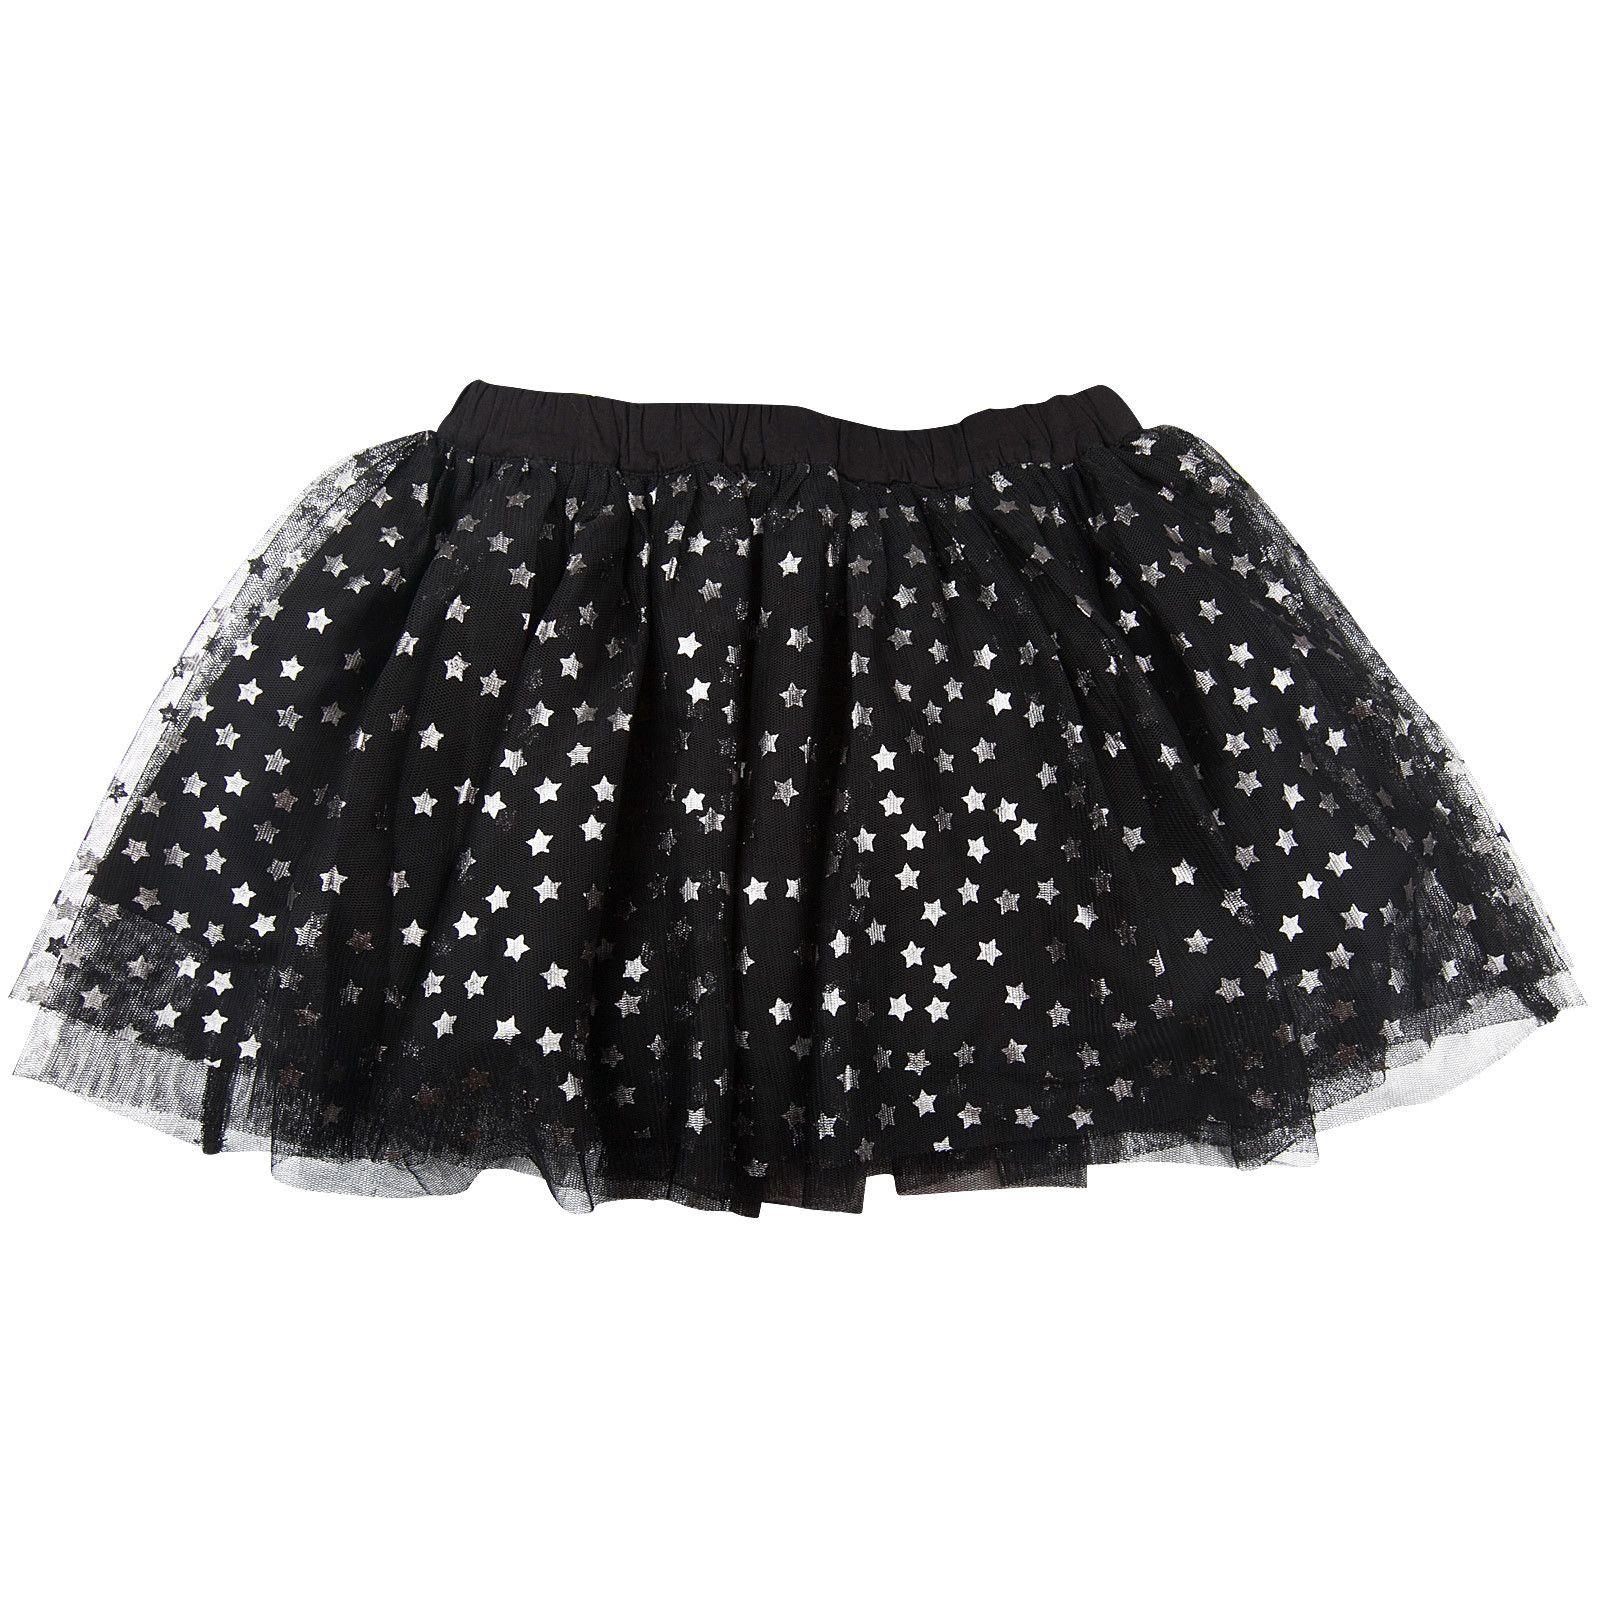 Honey Girls Black Tulle Skirt With Silver Stars - CÉMAROSE | Children's Fashion Store - 2